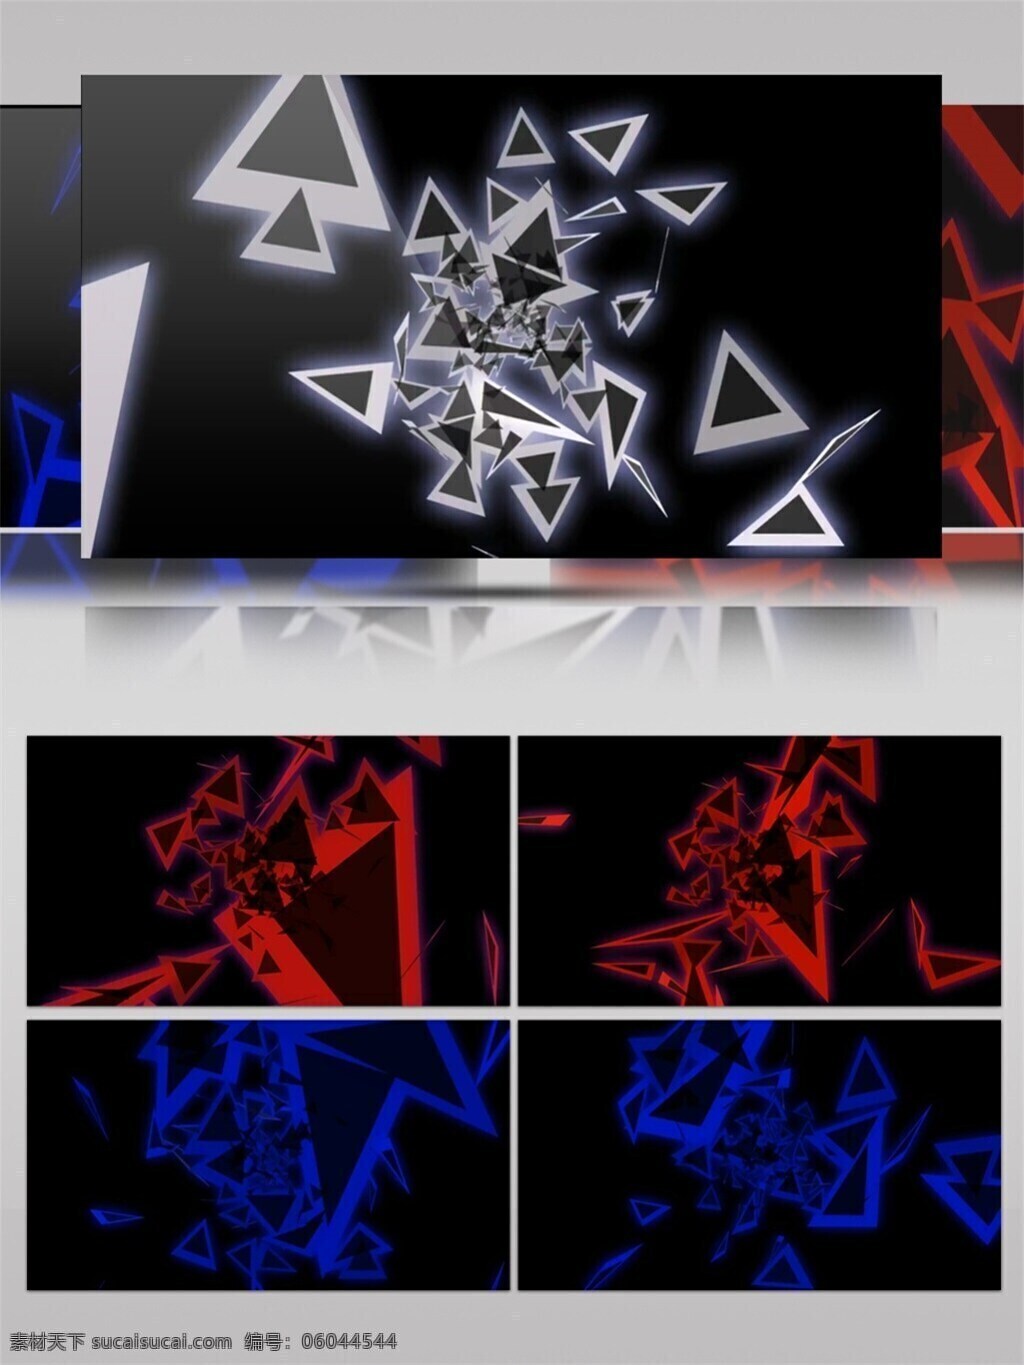 炫 酷 三角 星 高清 视频 壁纸图案 动态展示 房间装饰 背景 华丽灯光 立体几何 特效 装饰风格